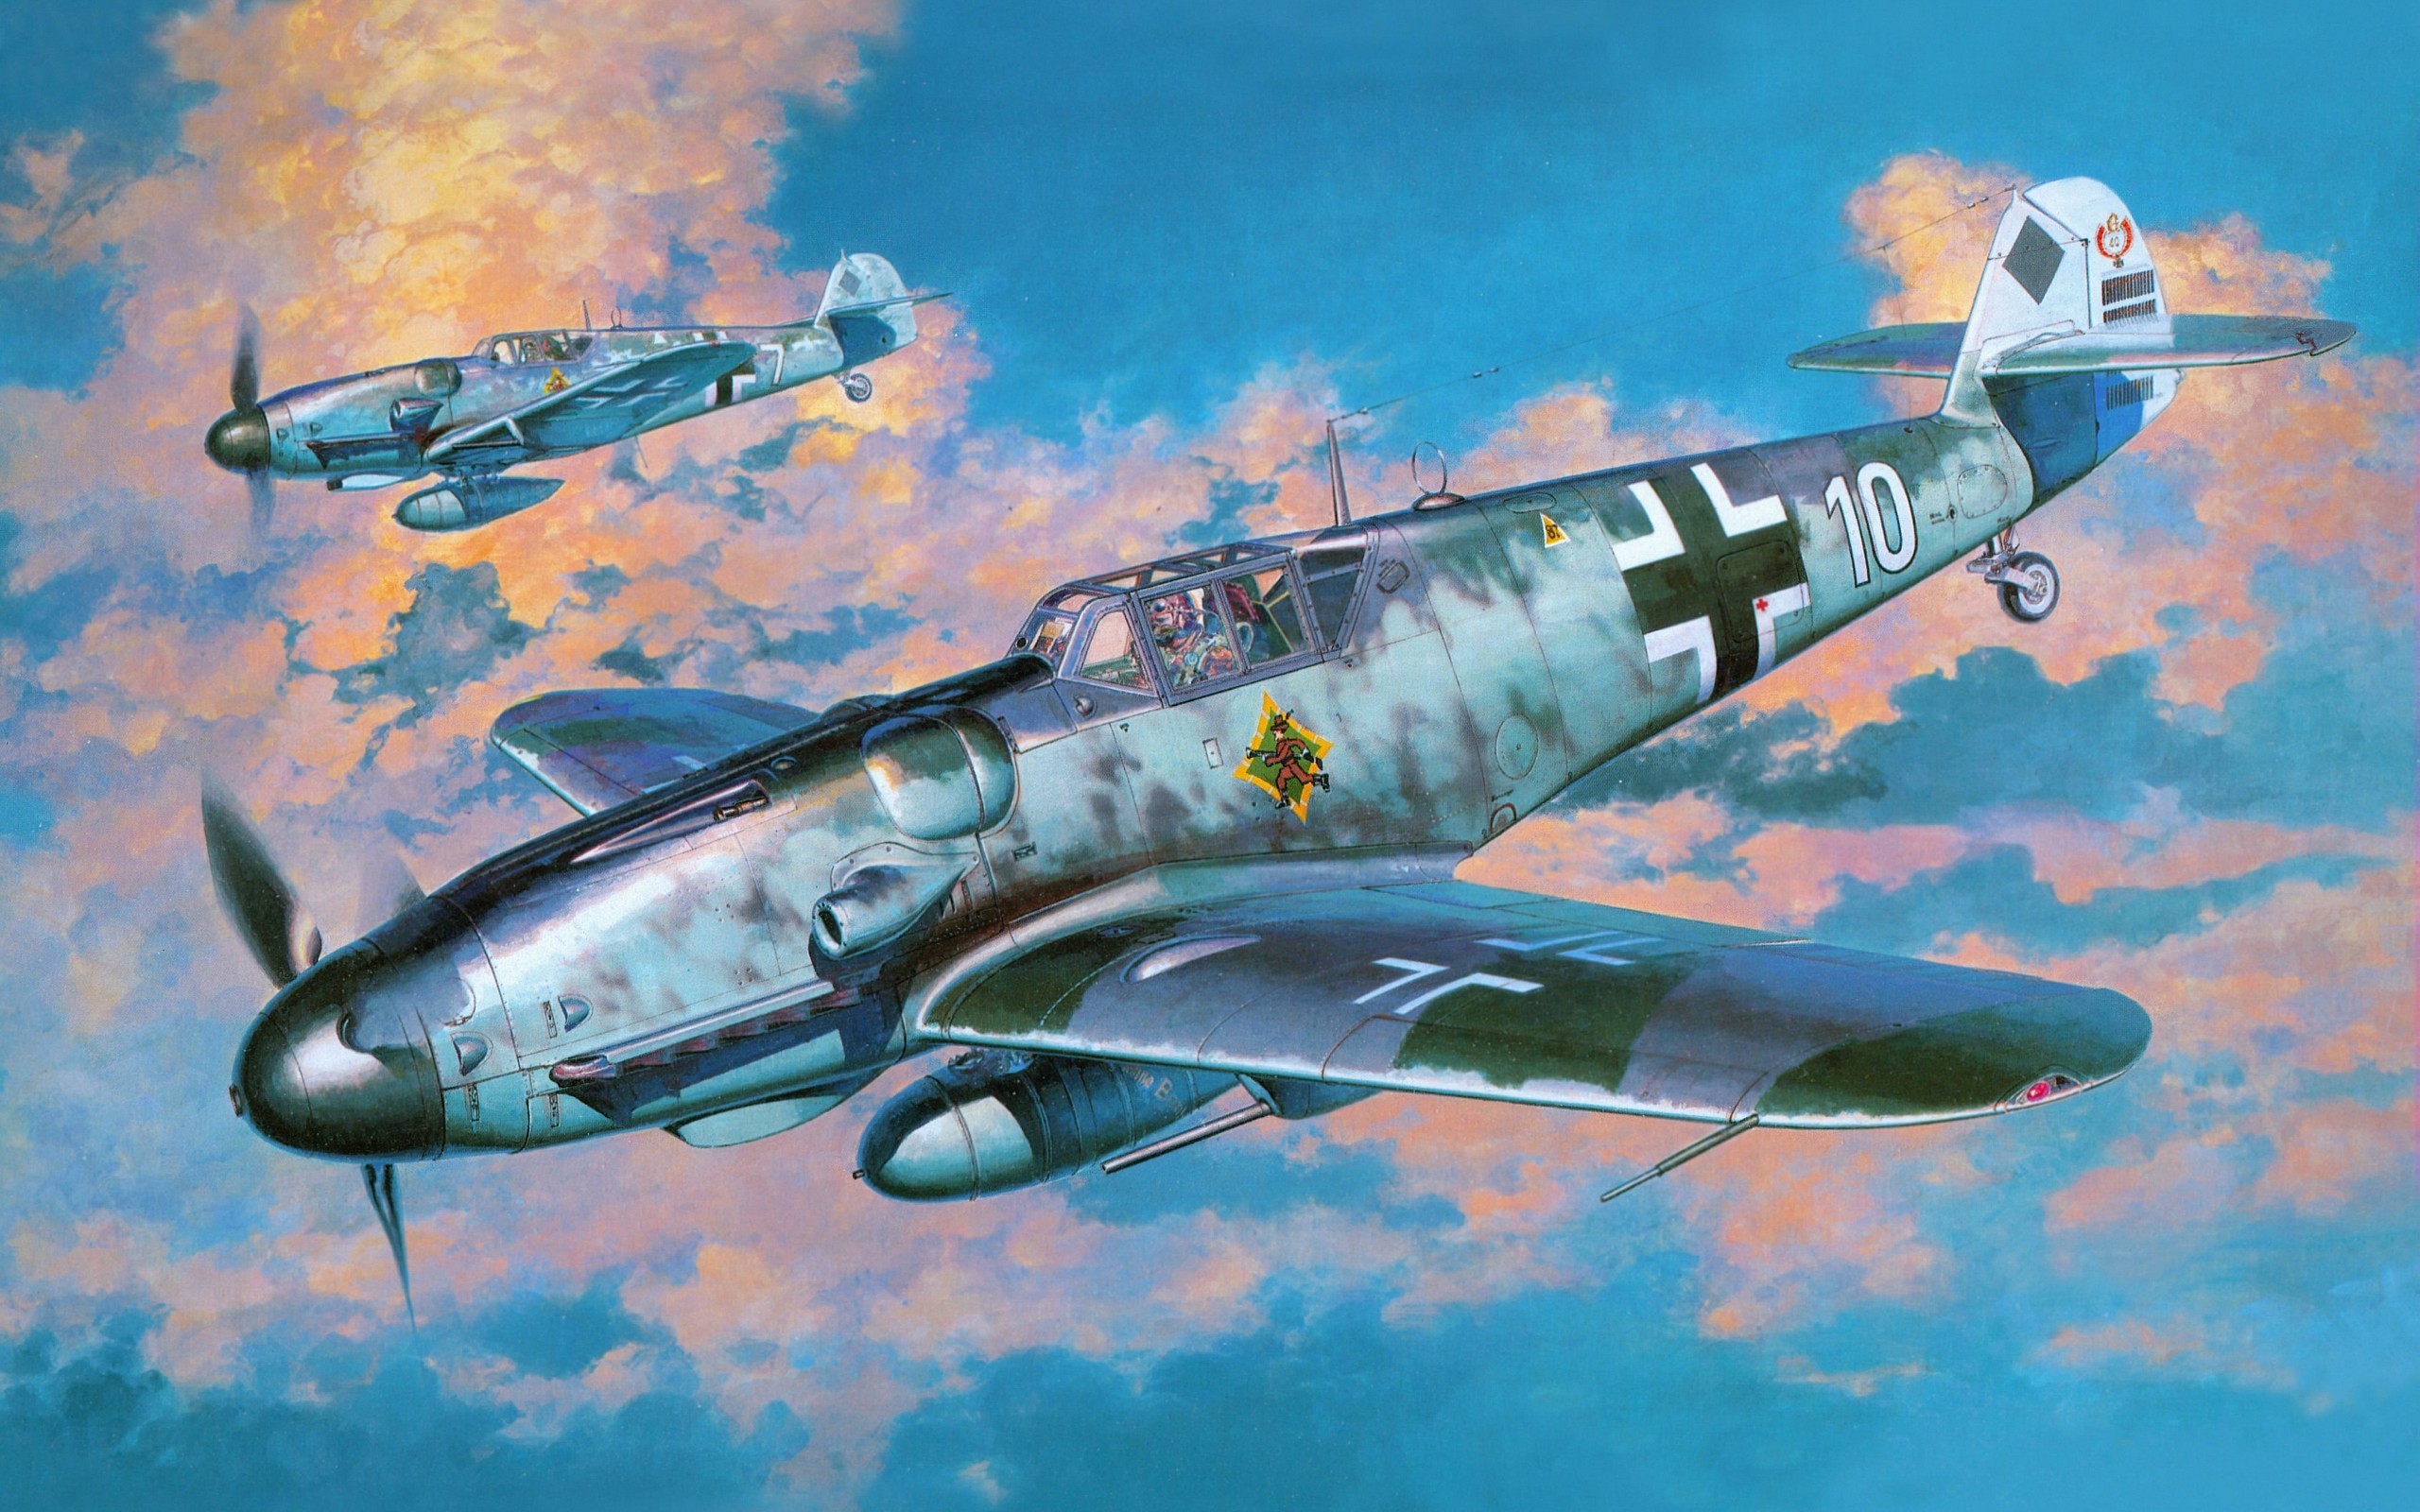 Messerschmitt, Messerschmitt Bf 109, Luftwaffe, Aircraft, Military, Artwork, Military Aircraft, World War II, Germany Wallpaper